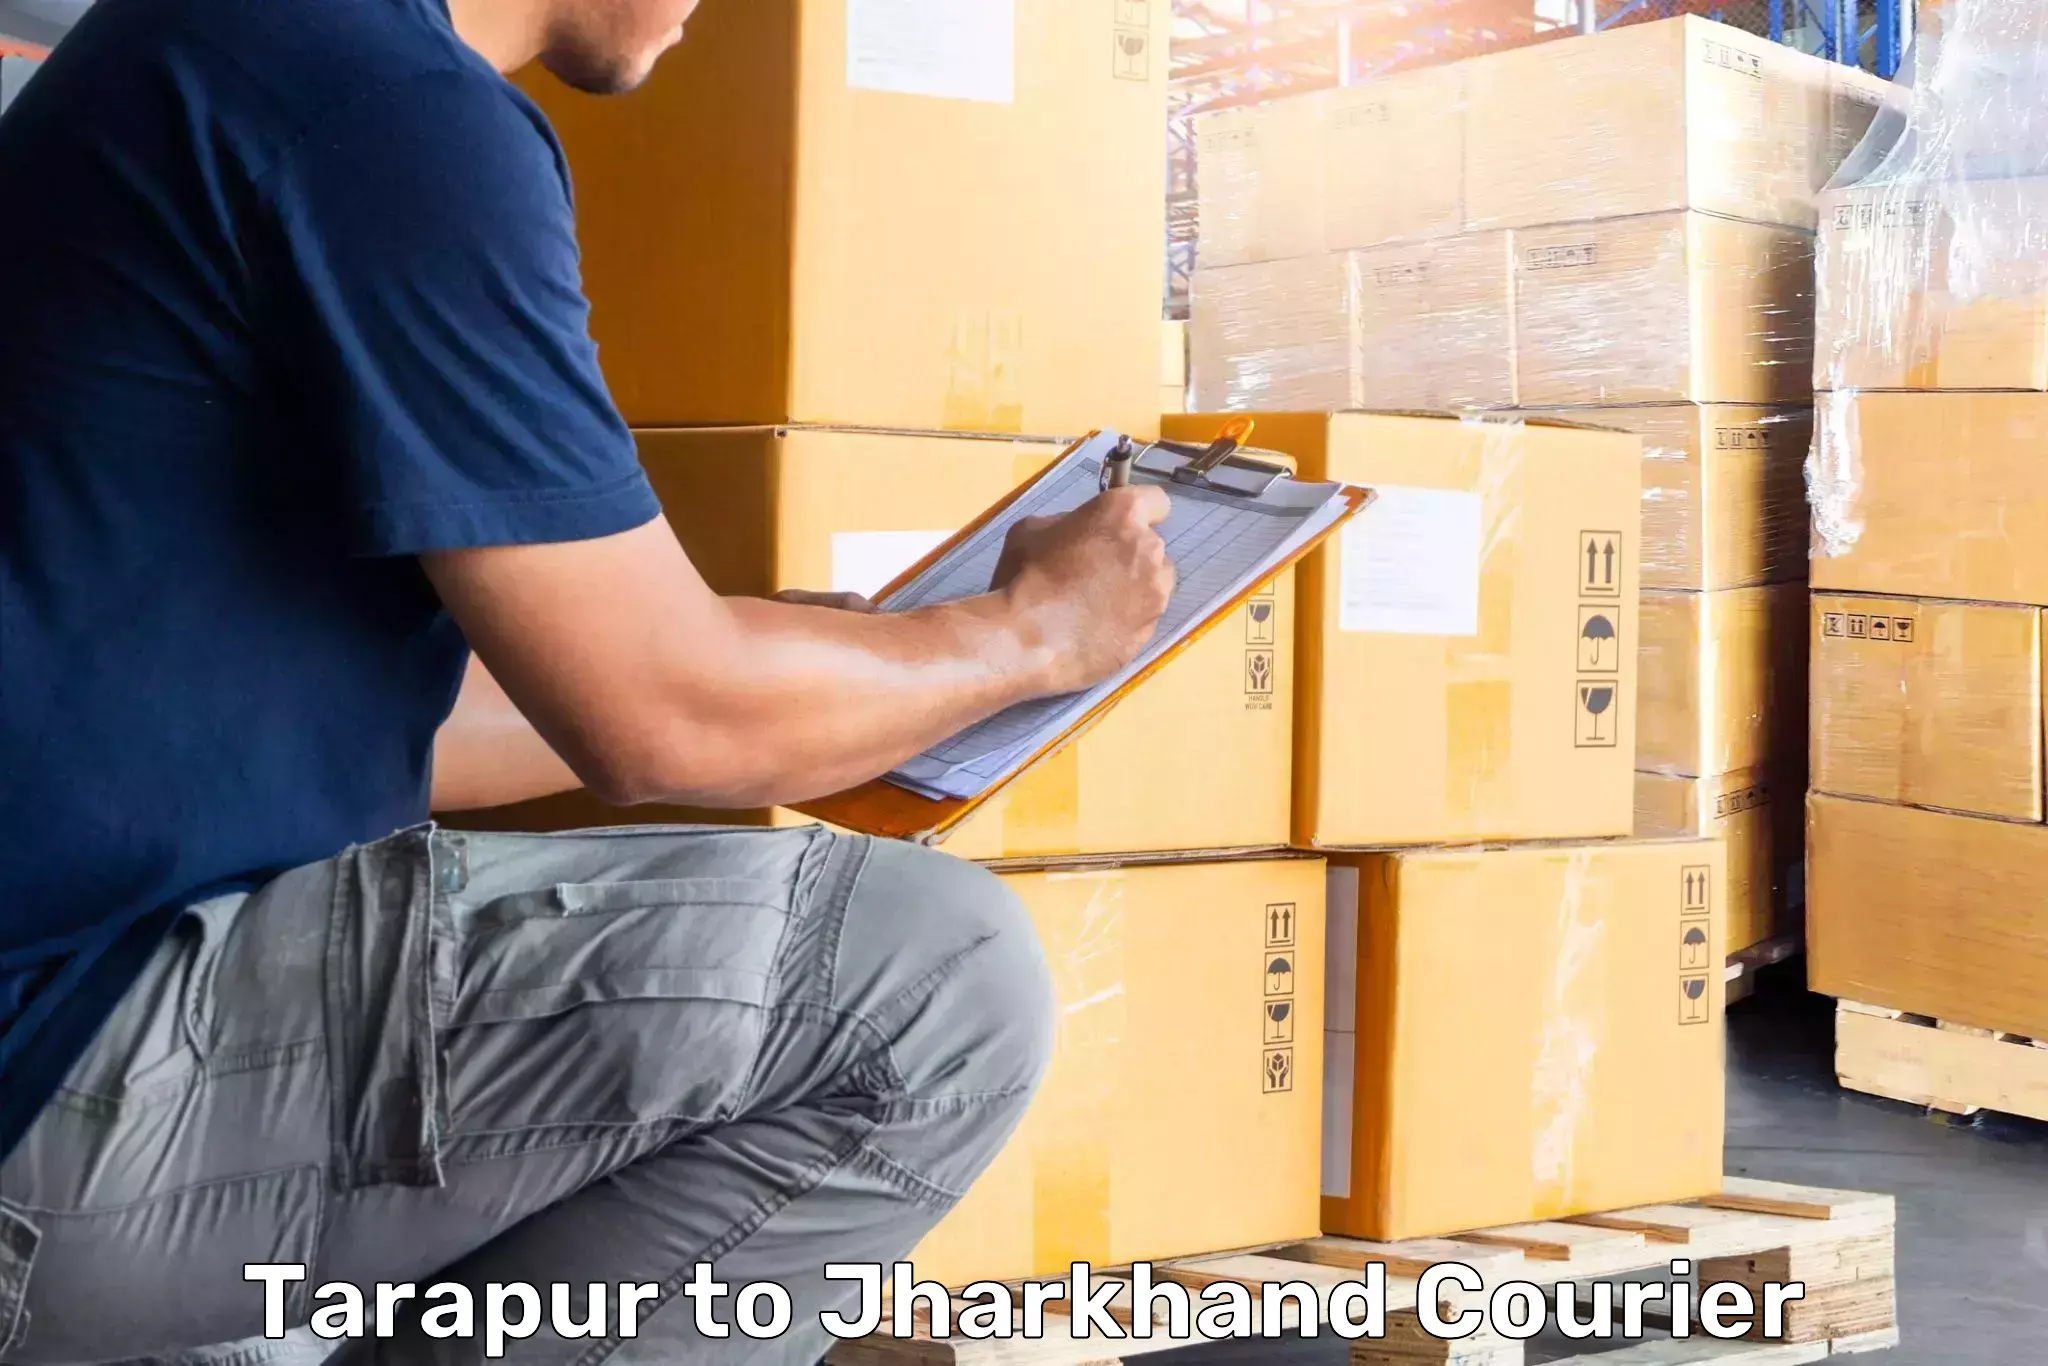 Luggage shipment specialists Tarapur to Bundu